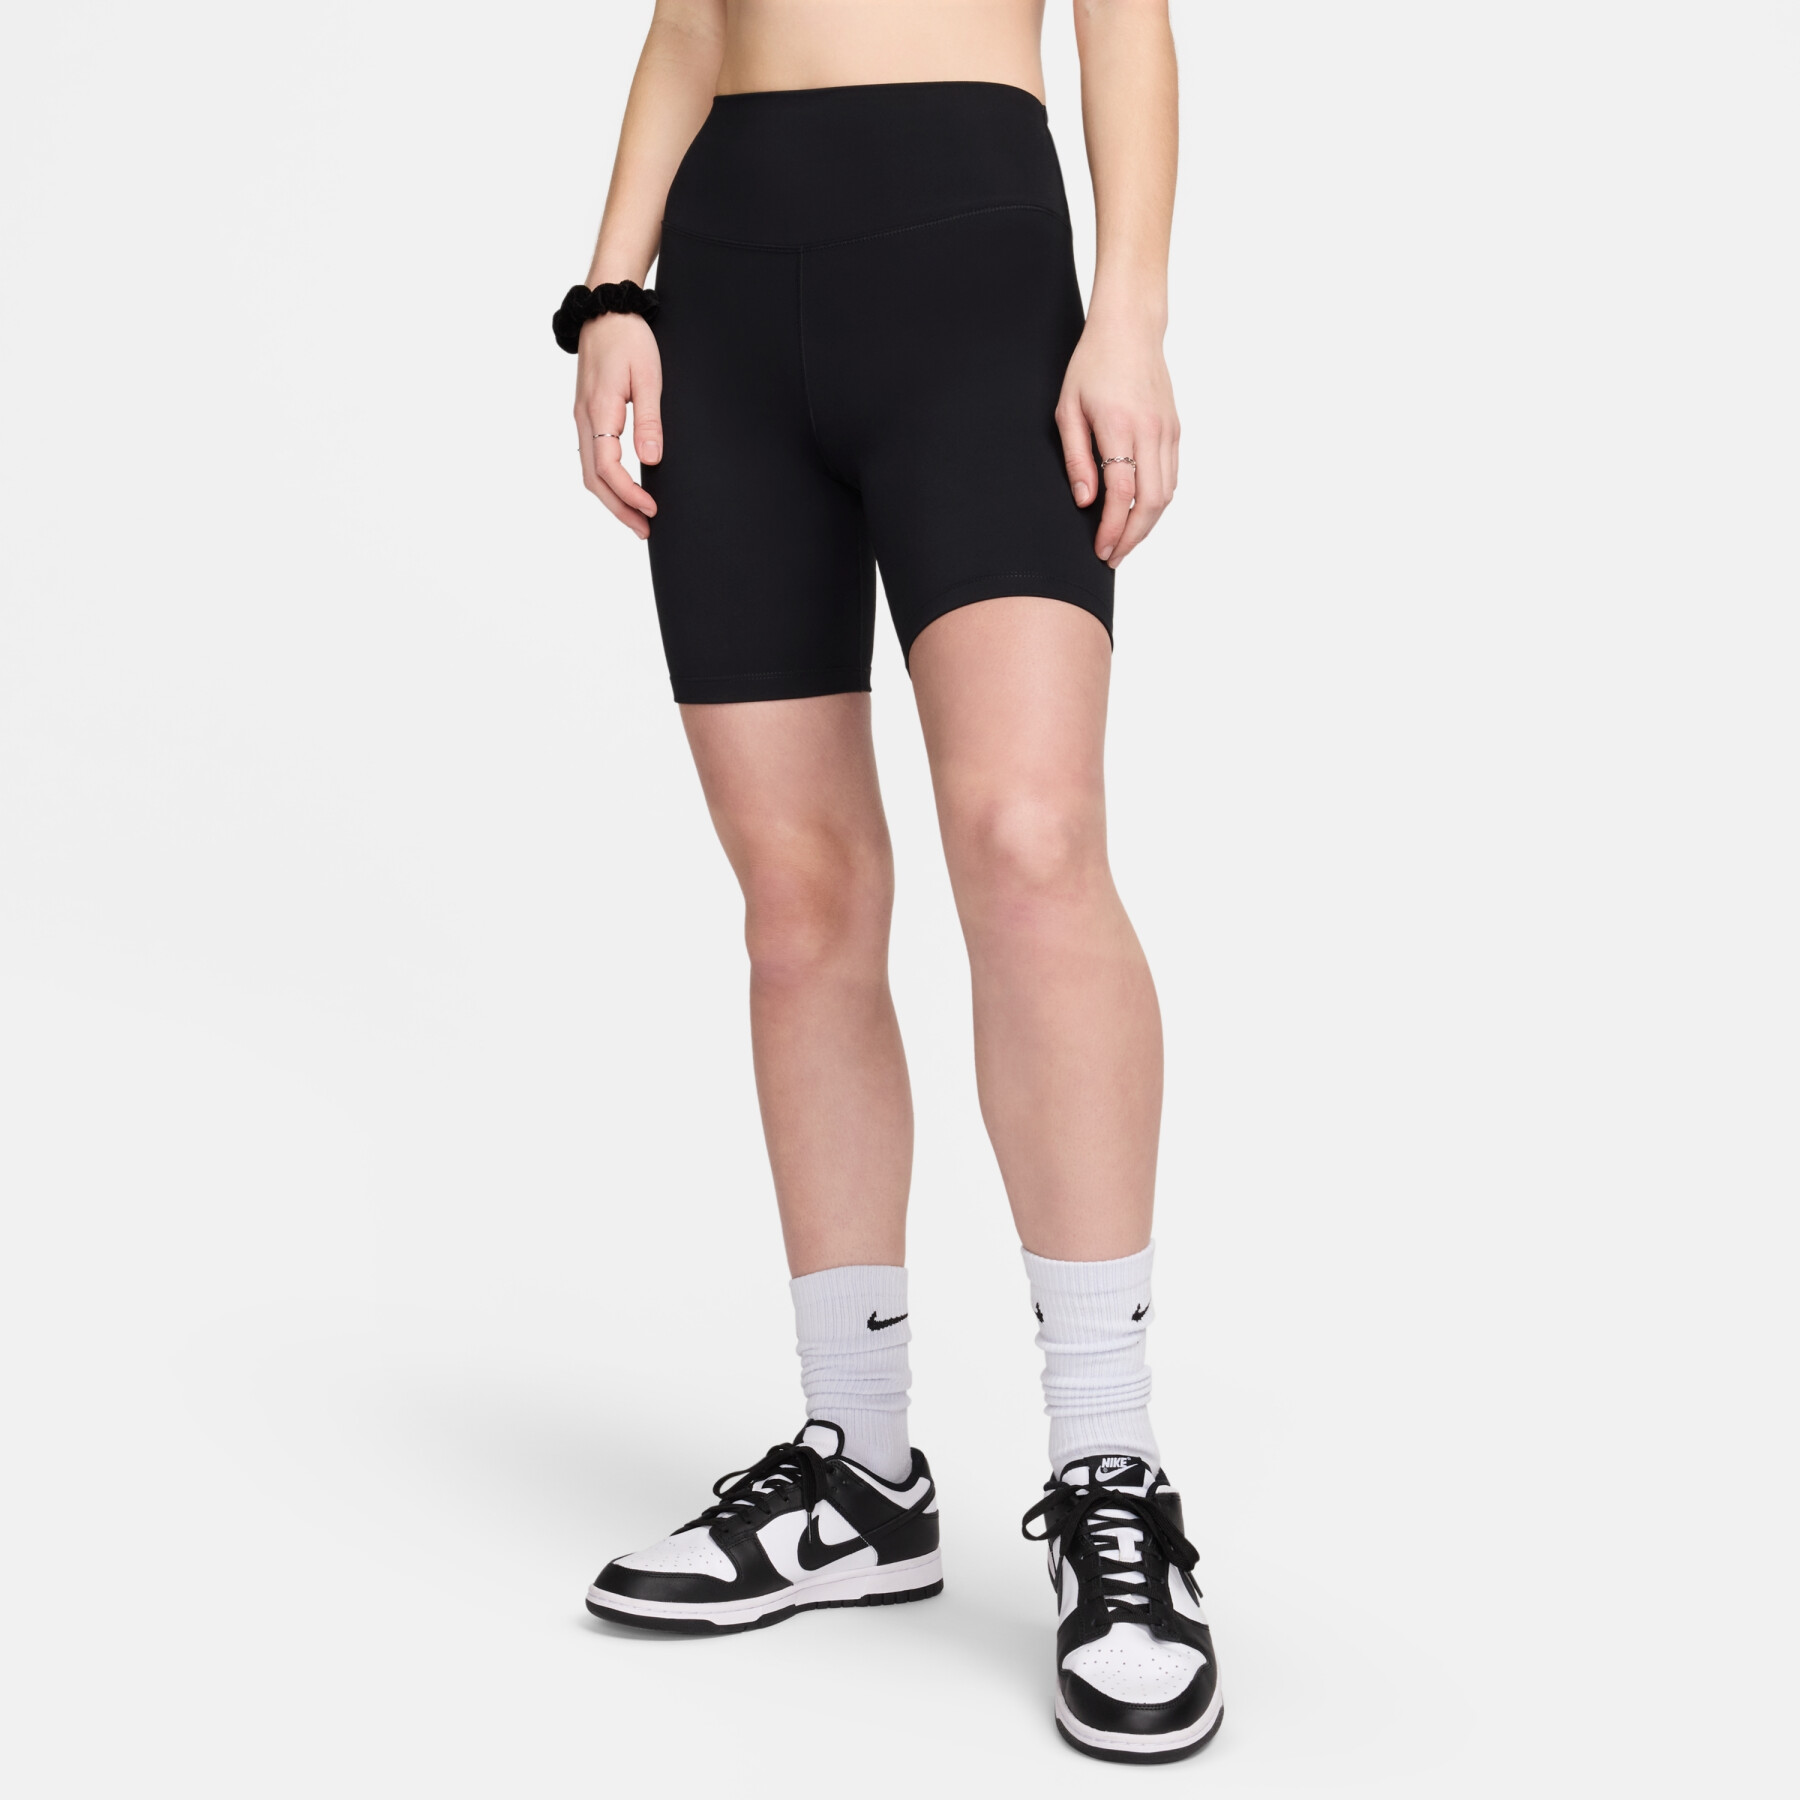 Botas de mujer hasta el muslo Nike One